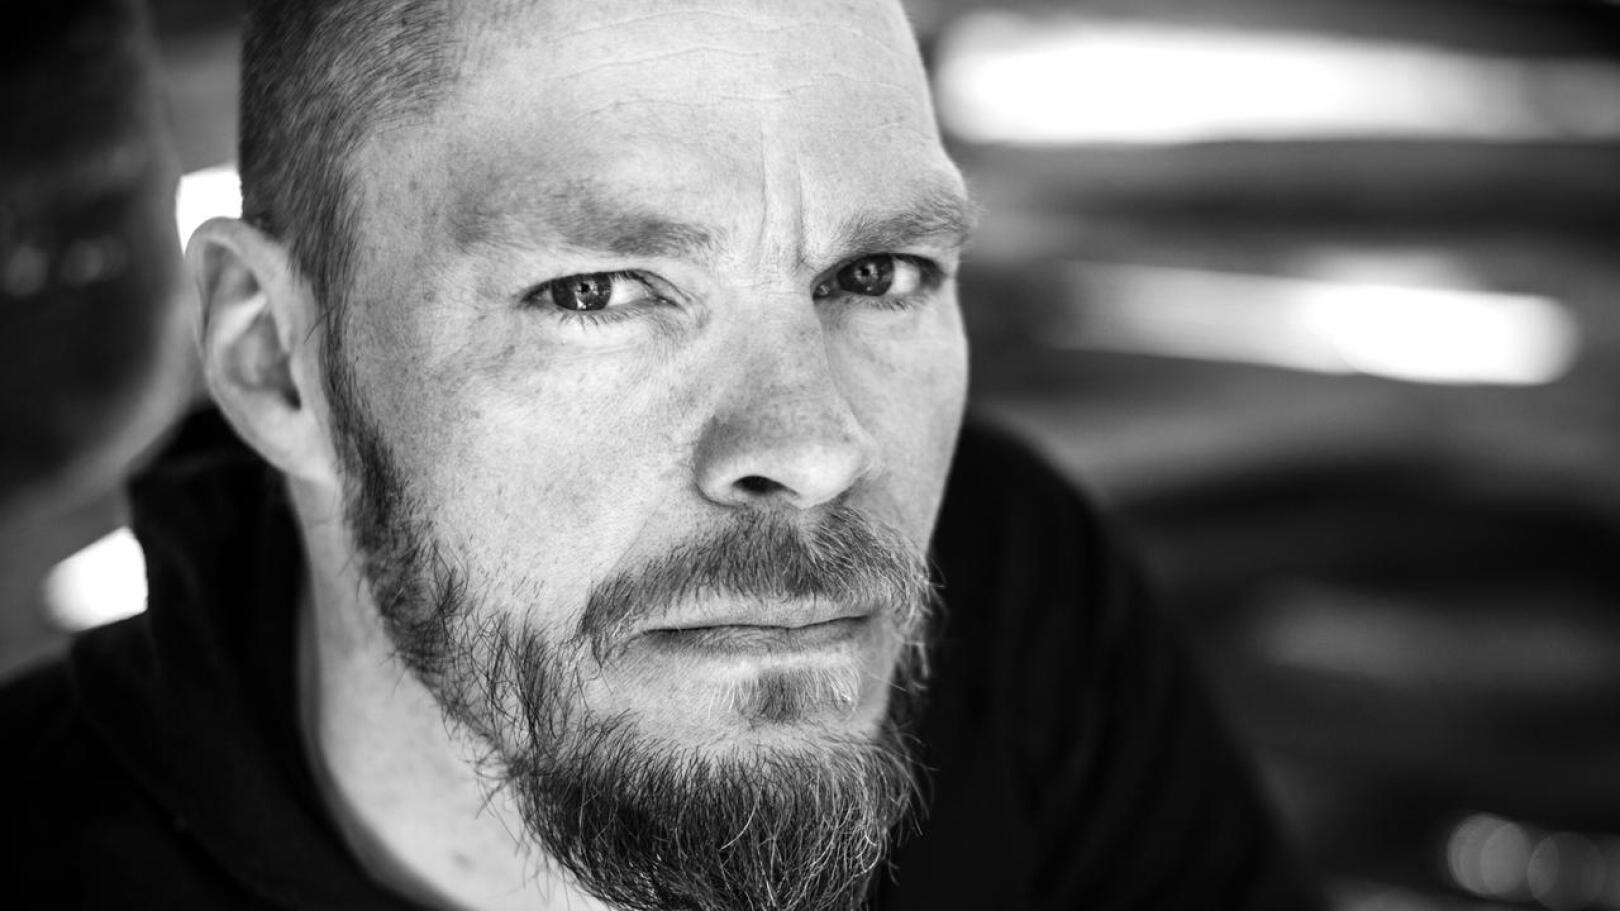 Tuomo Pirttimaa on Kuusamossa asuva nivalalaissyntyinen vapaa toimittaja ja nyt myös esikoiskirjailija.